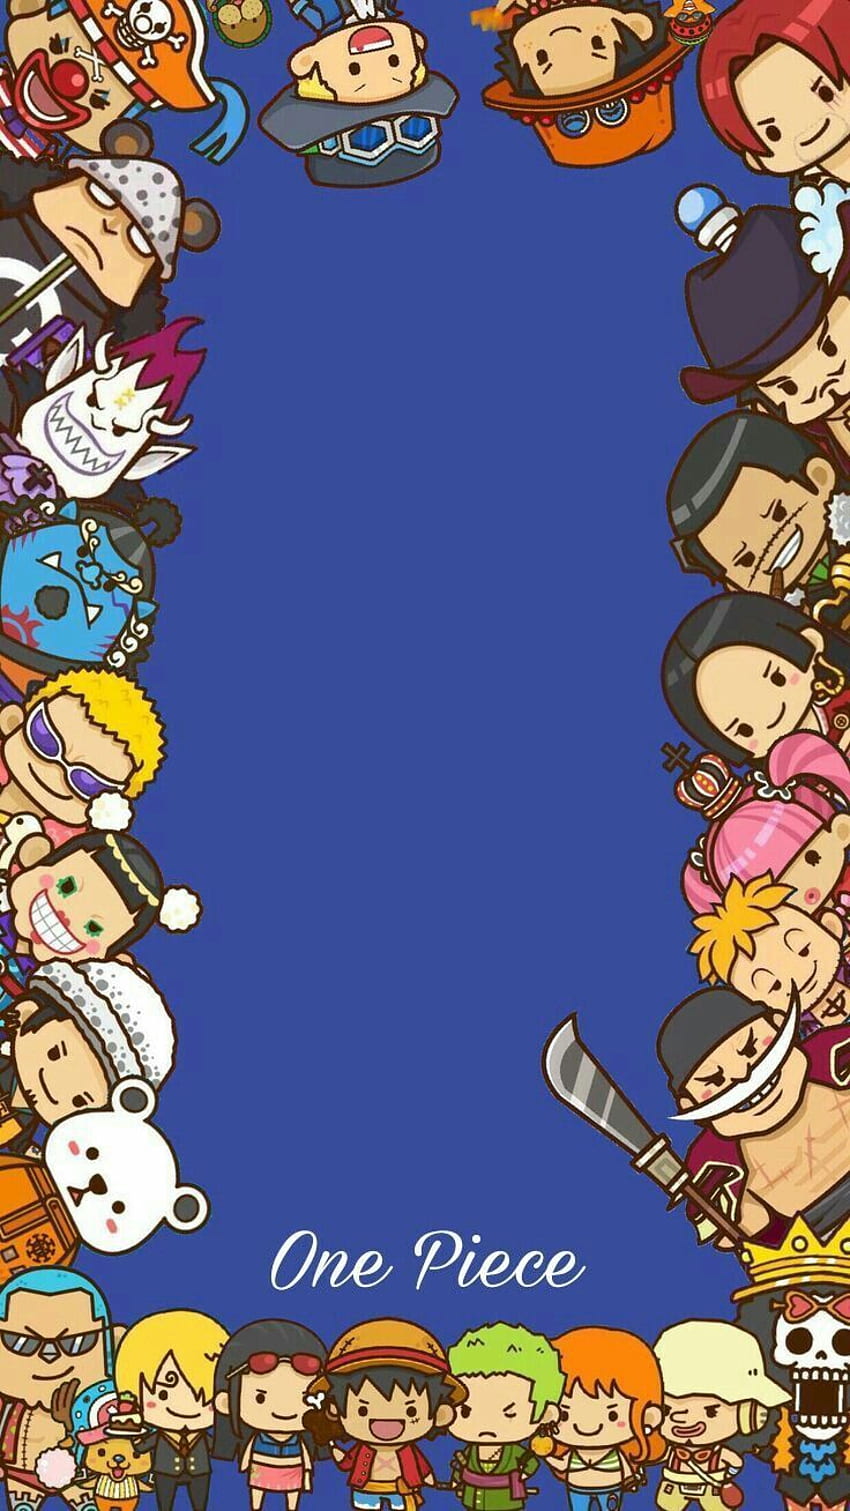 One Piece Dunia Baru Chibi One Piece Chibi Top One Piece Chibi One Piece. IPhone satu bagian, Chibi, satu bagian, One Piece Galaxy wallpaper ponsel HD